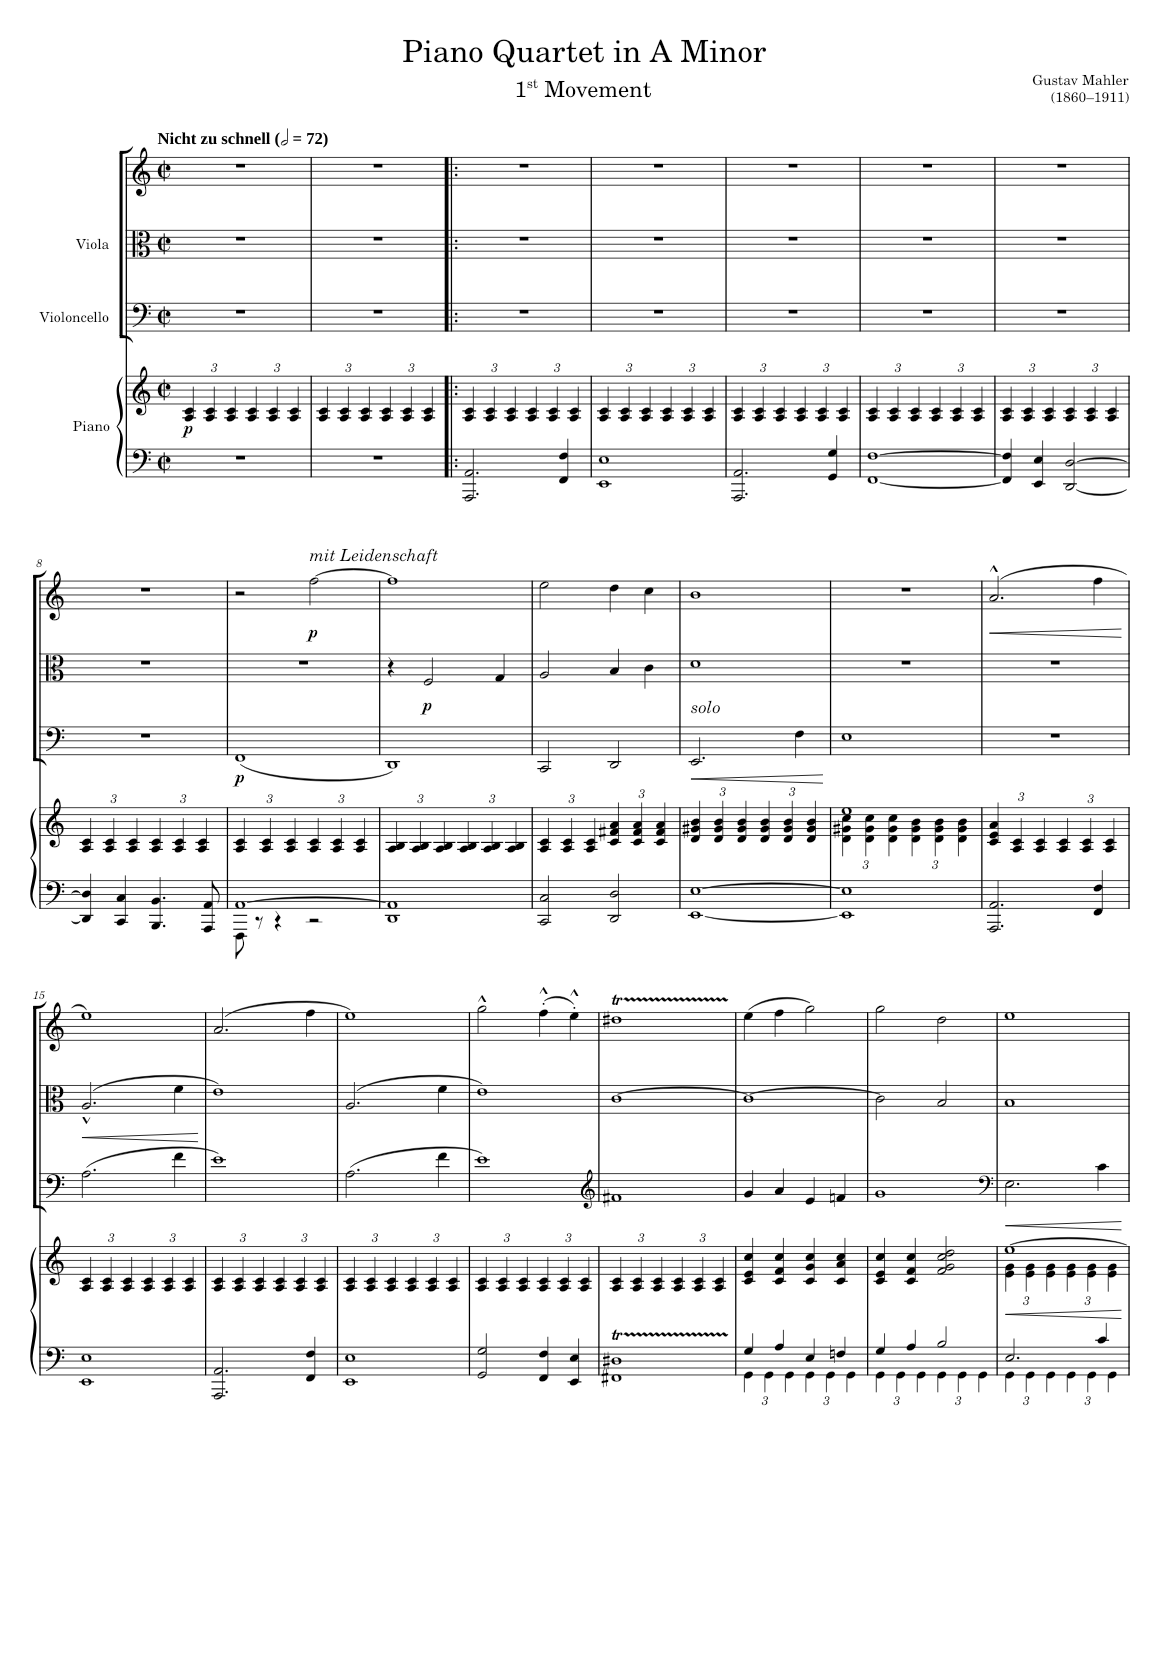 Piano Quartet – Gustav Mahler Gustav Mahler - Piano Quartet (CORRECT PIANO) Sheet  music for Piano, Violin, Viola, Cello (Piano Quartet) | Musescore.com